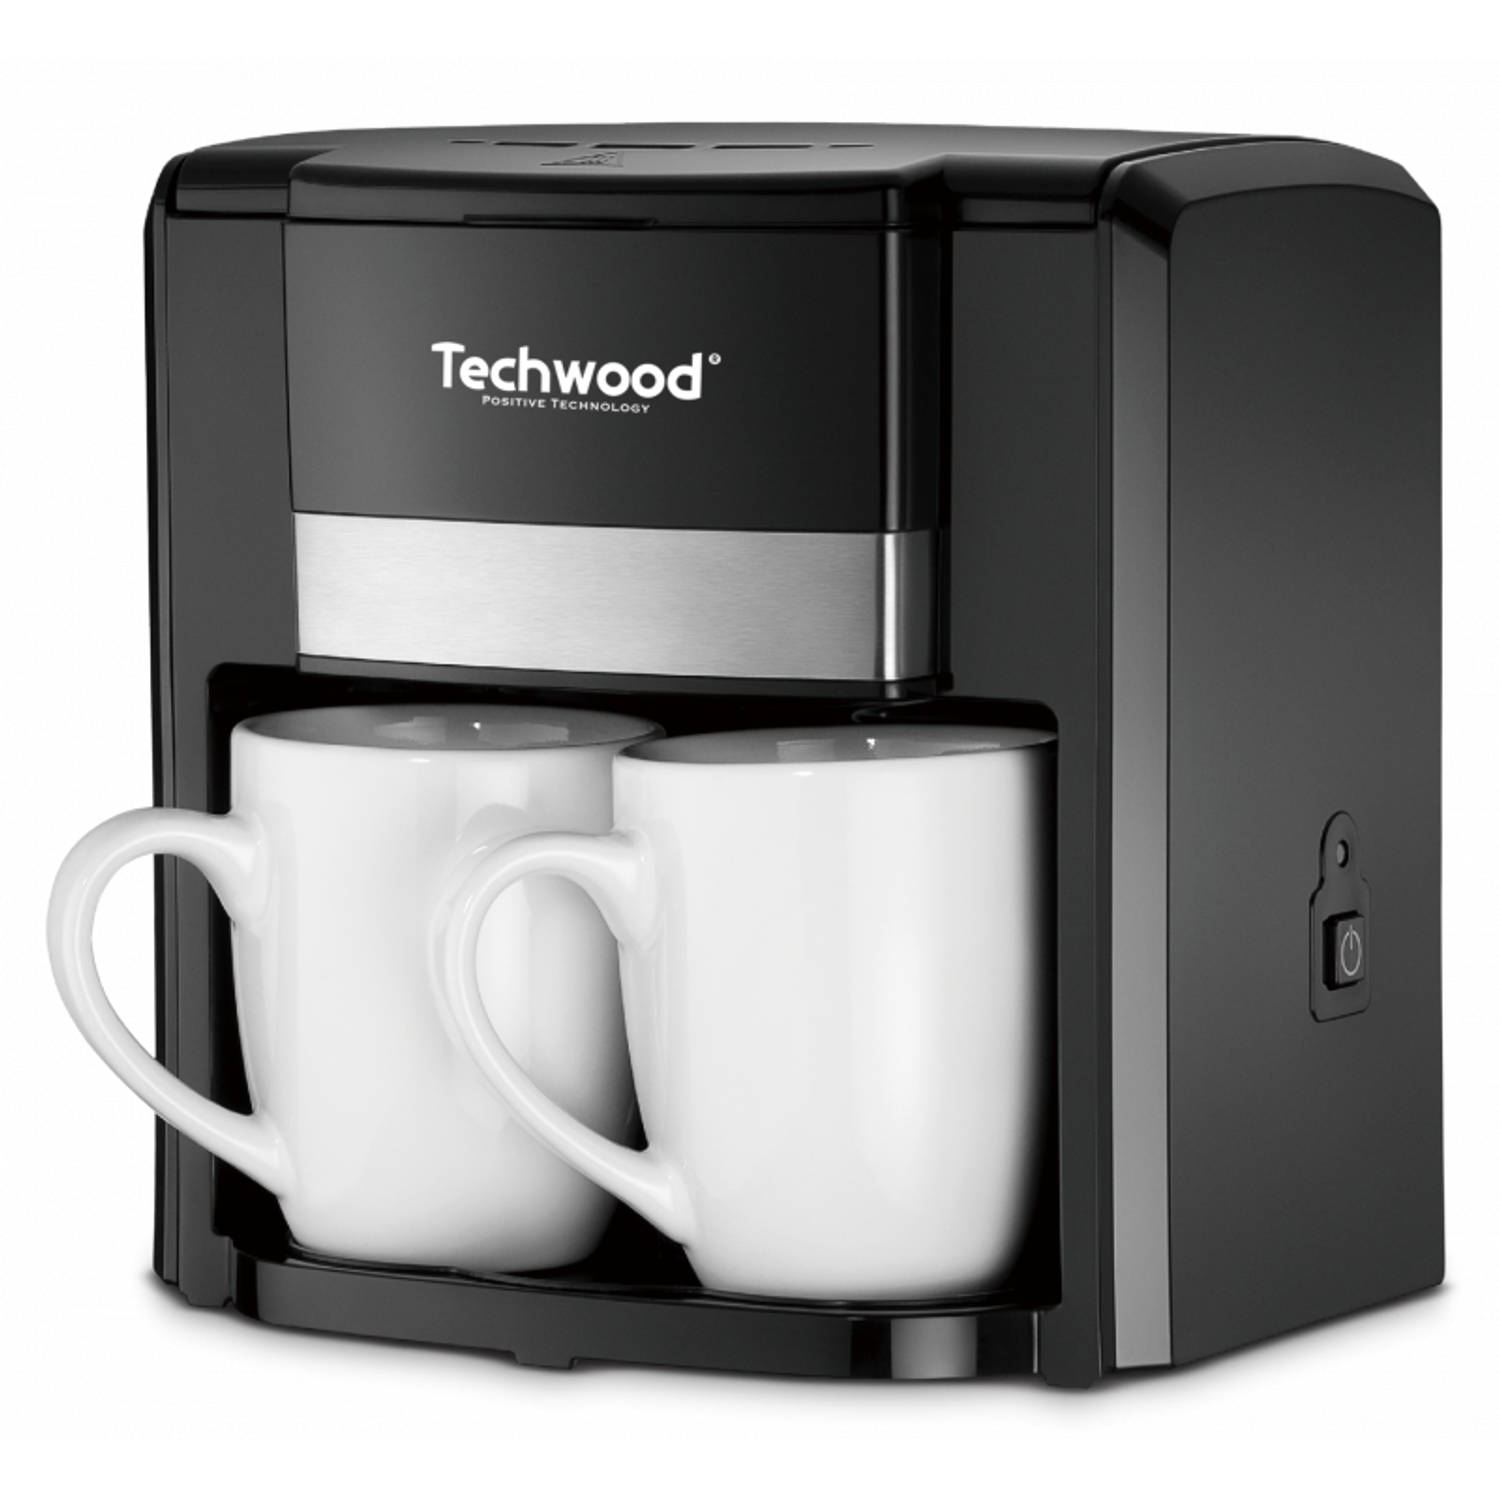 gereedschap begin wereld Techwood duo koffiezetter tca-206 met twee porseleinen kopjes | Blokker